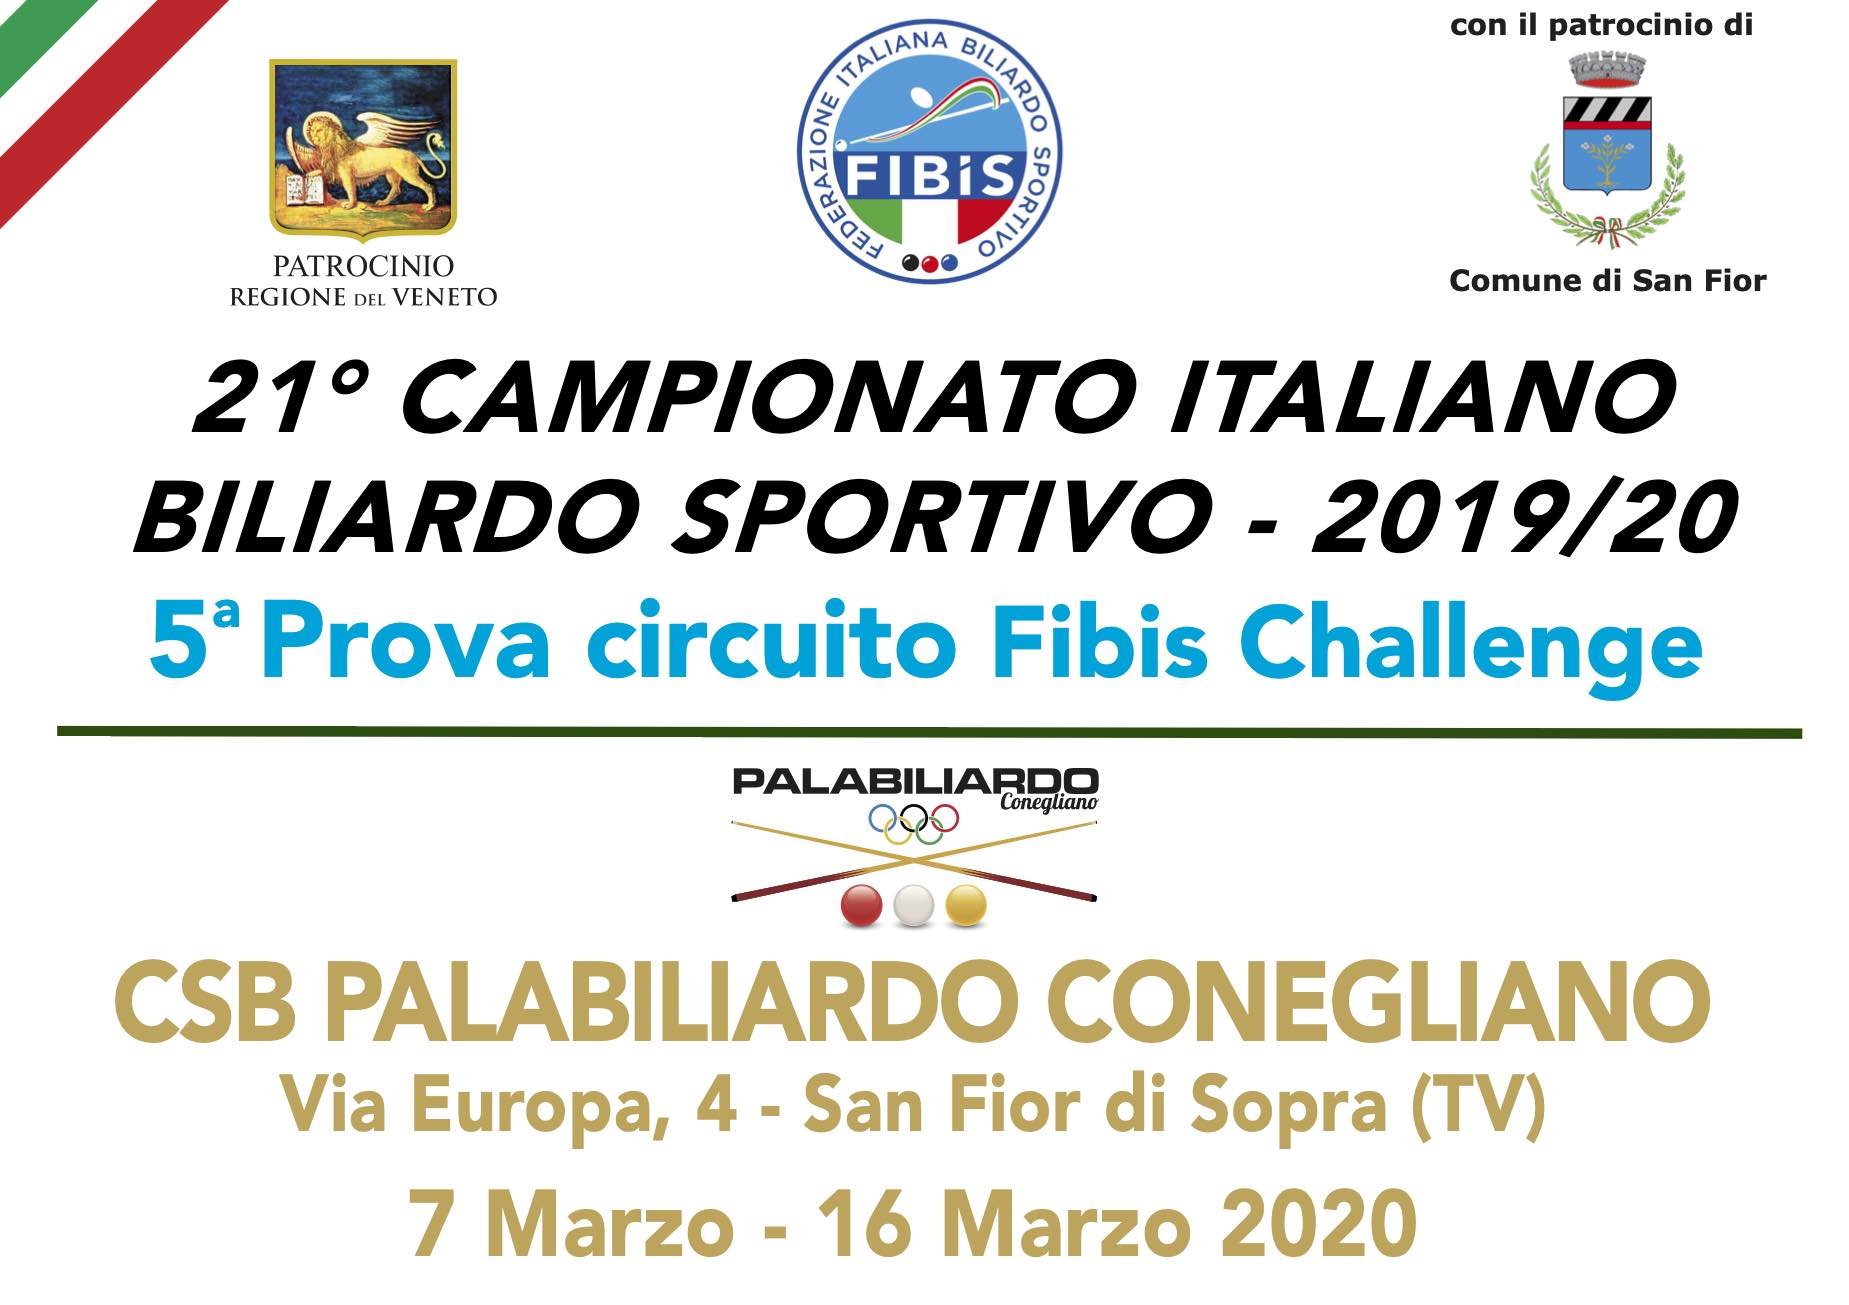 CAMPIONATI ITALIANI - A SAN FIOR (TV) LA 5^ PROVA FIBIS CHALLENGE